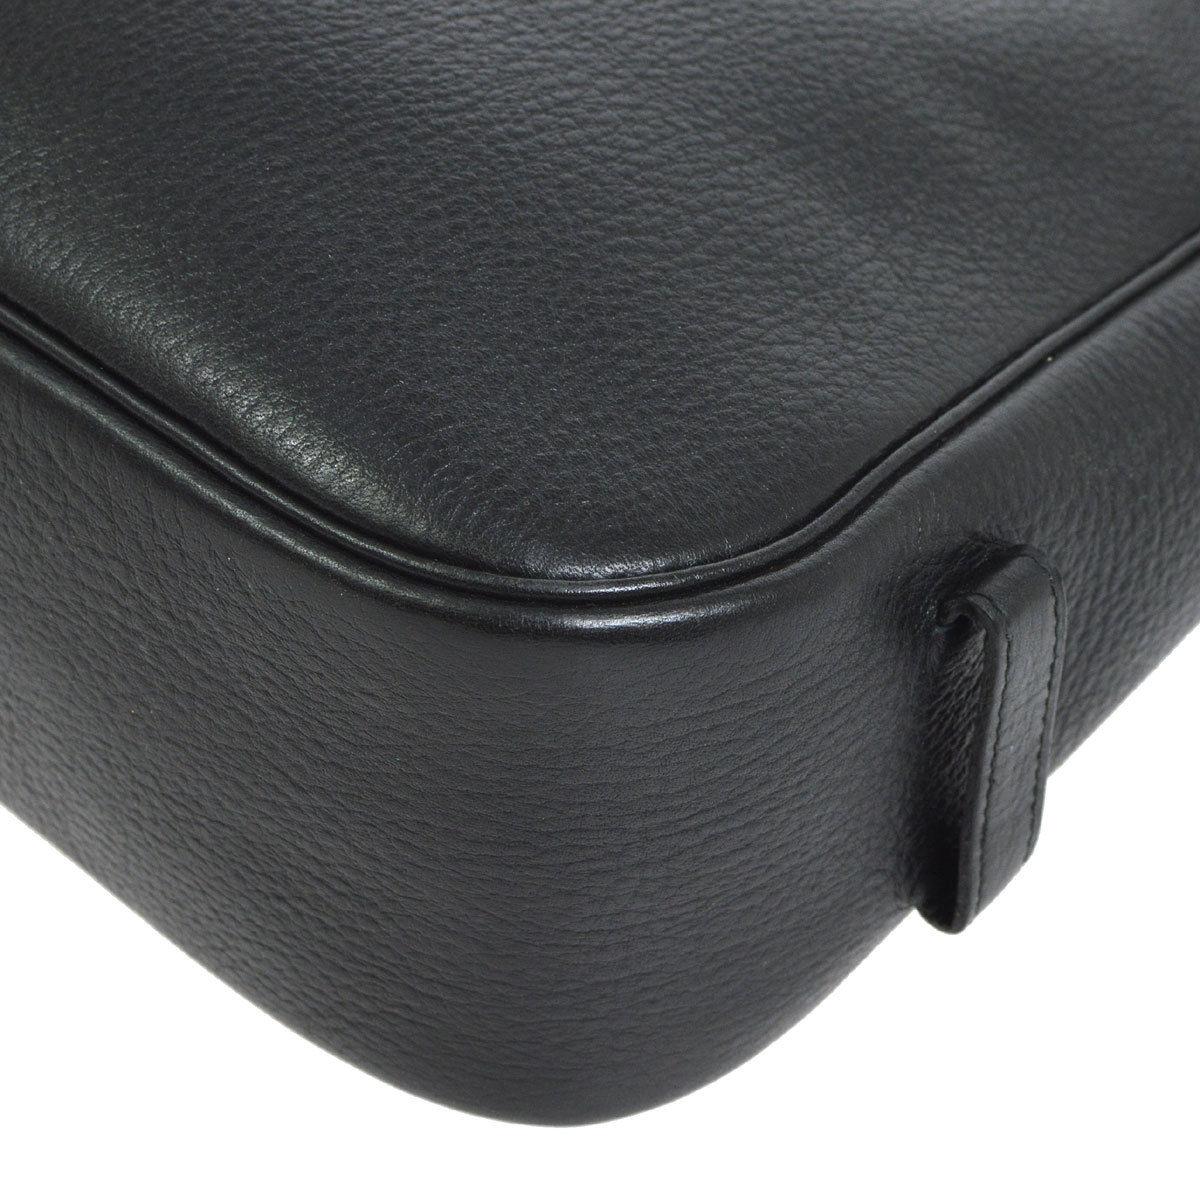 Hermes Black Leather Cognac Large Carryall Shoulder Crossbody Bag 1